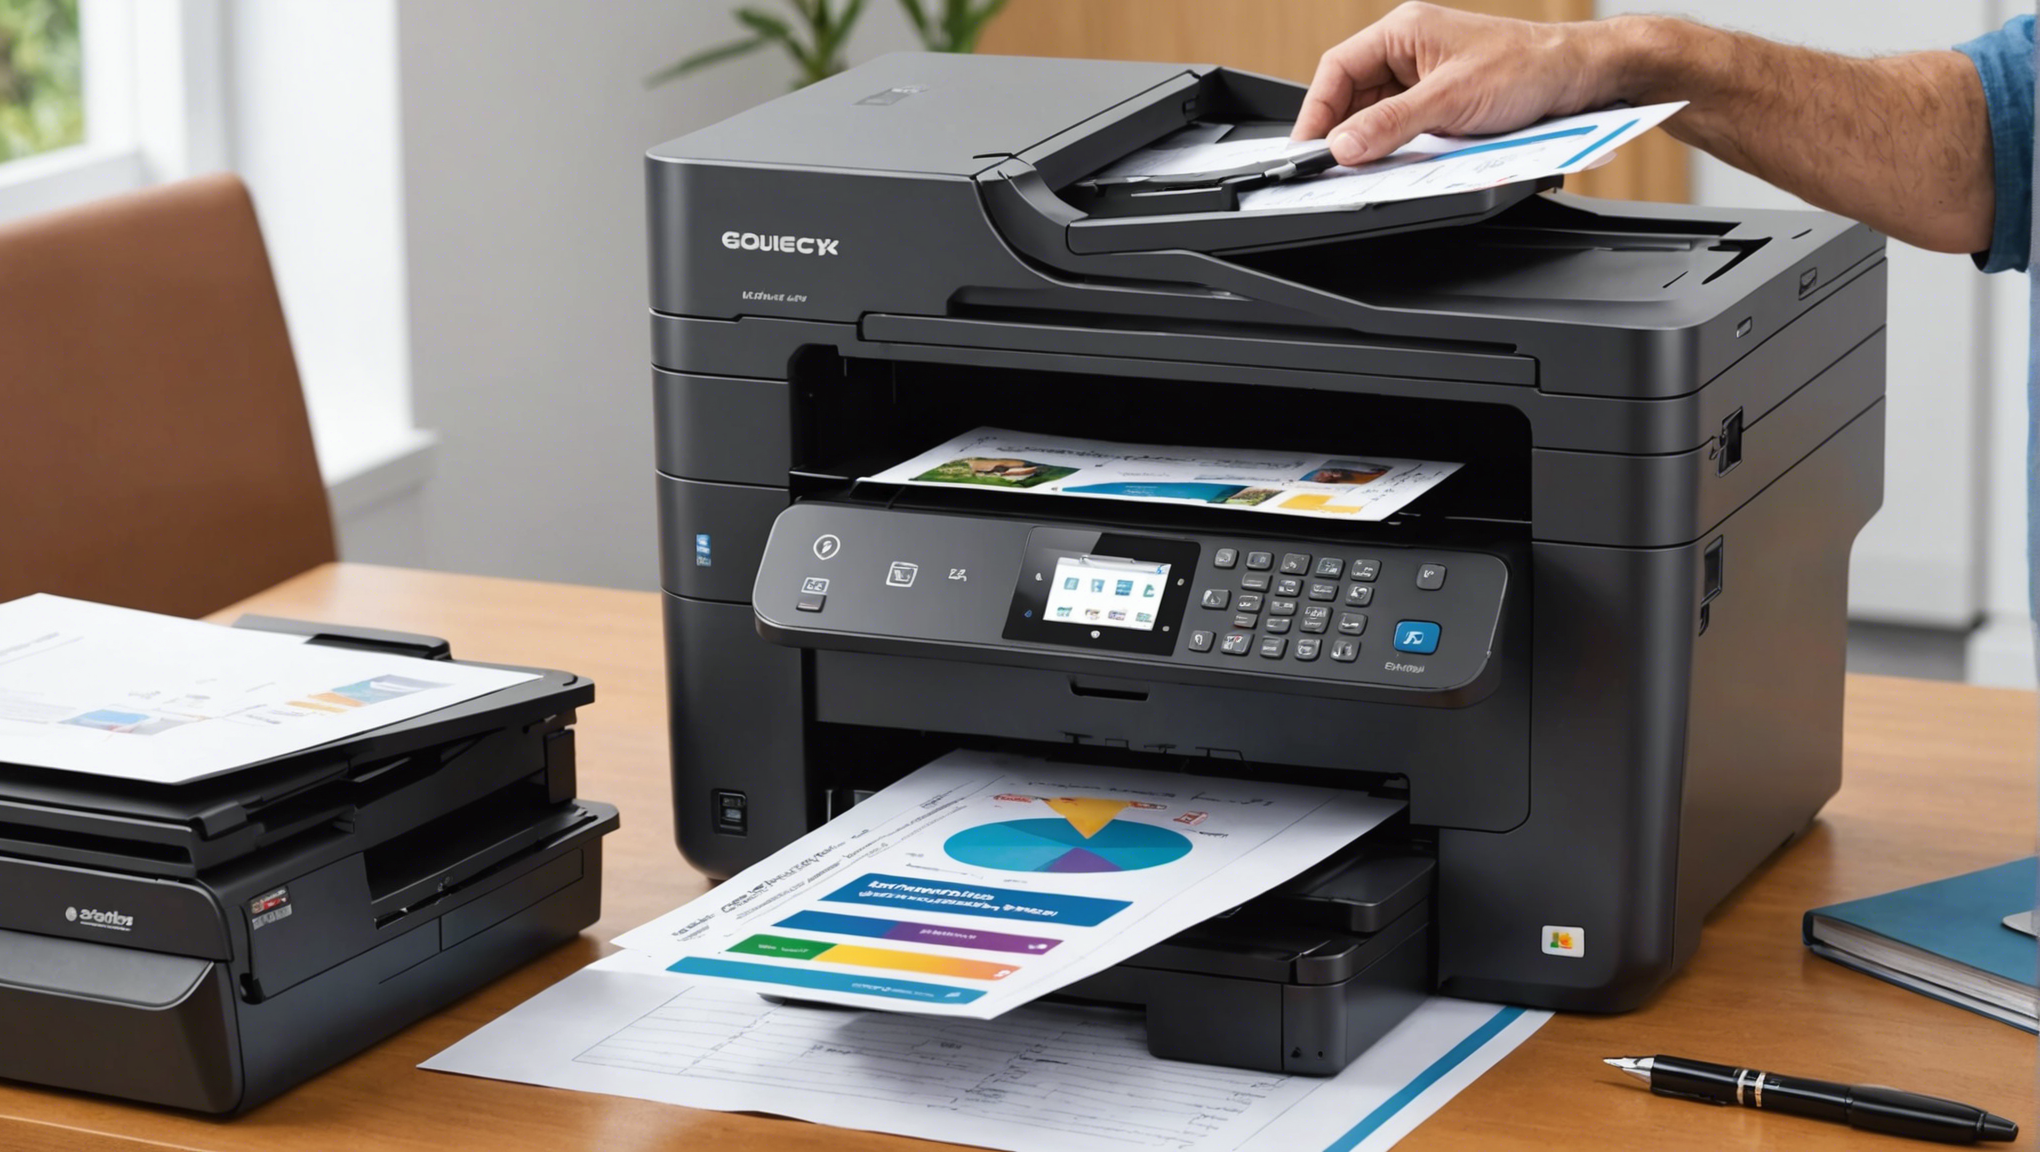 découvrez les imprimantes professionnelles à prix abordables et apprenez ce qui définit une imprimante professionnelle abordable.